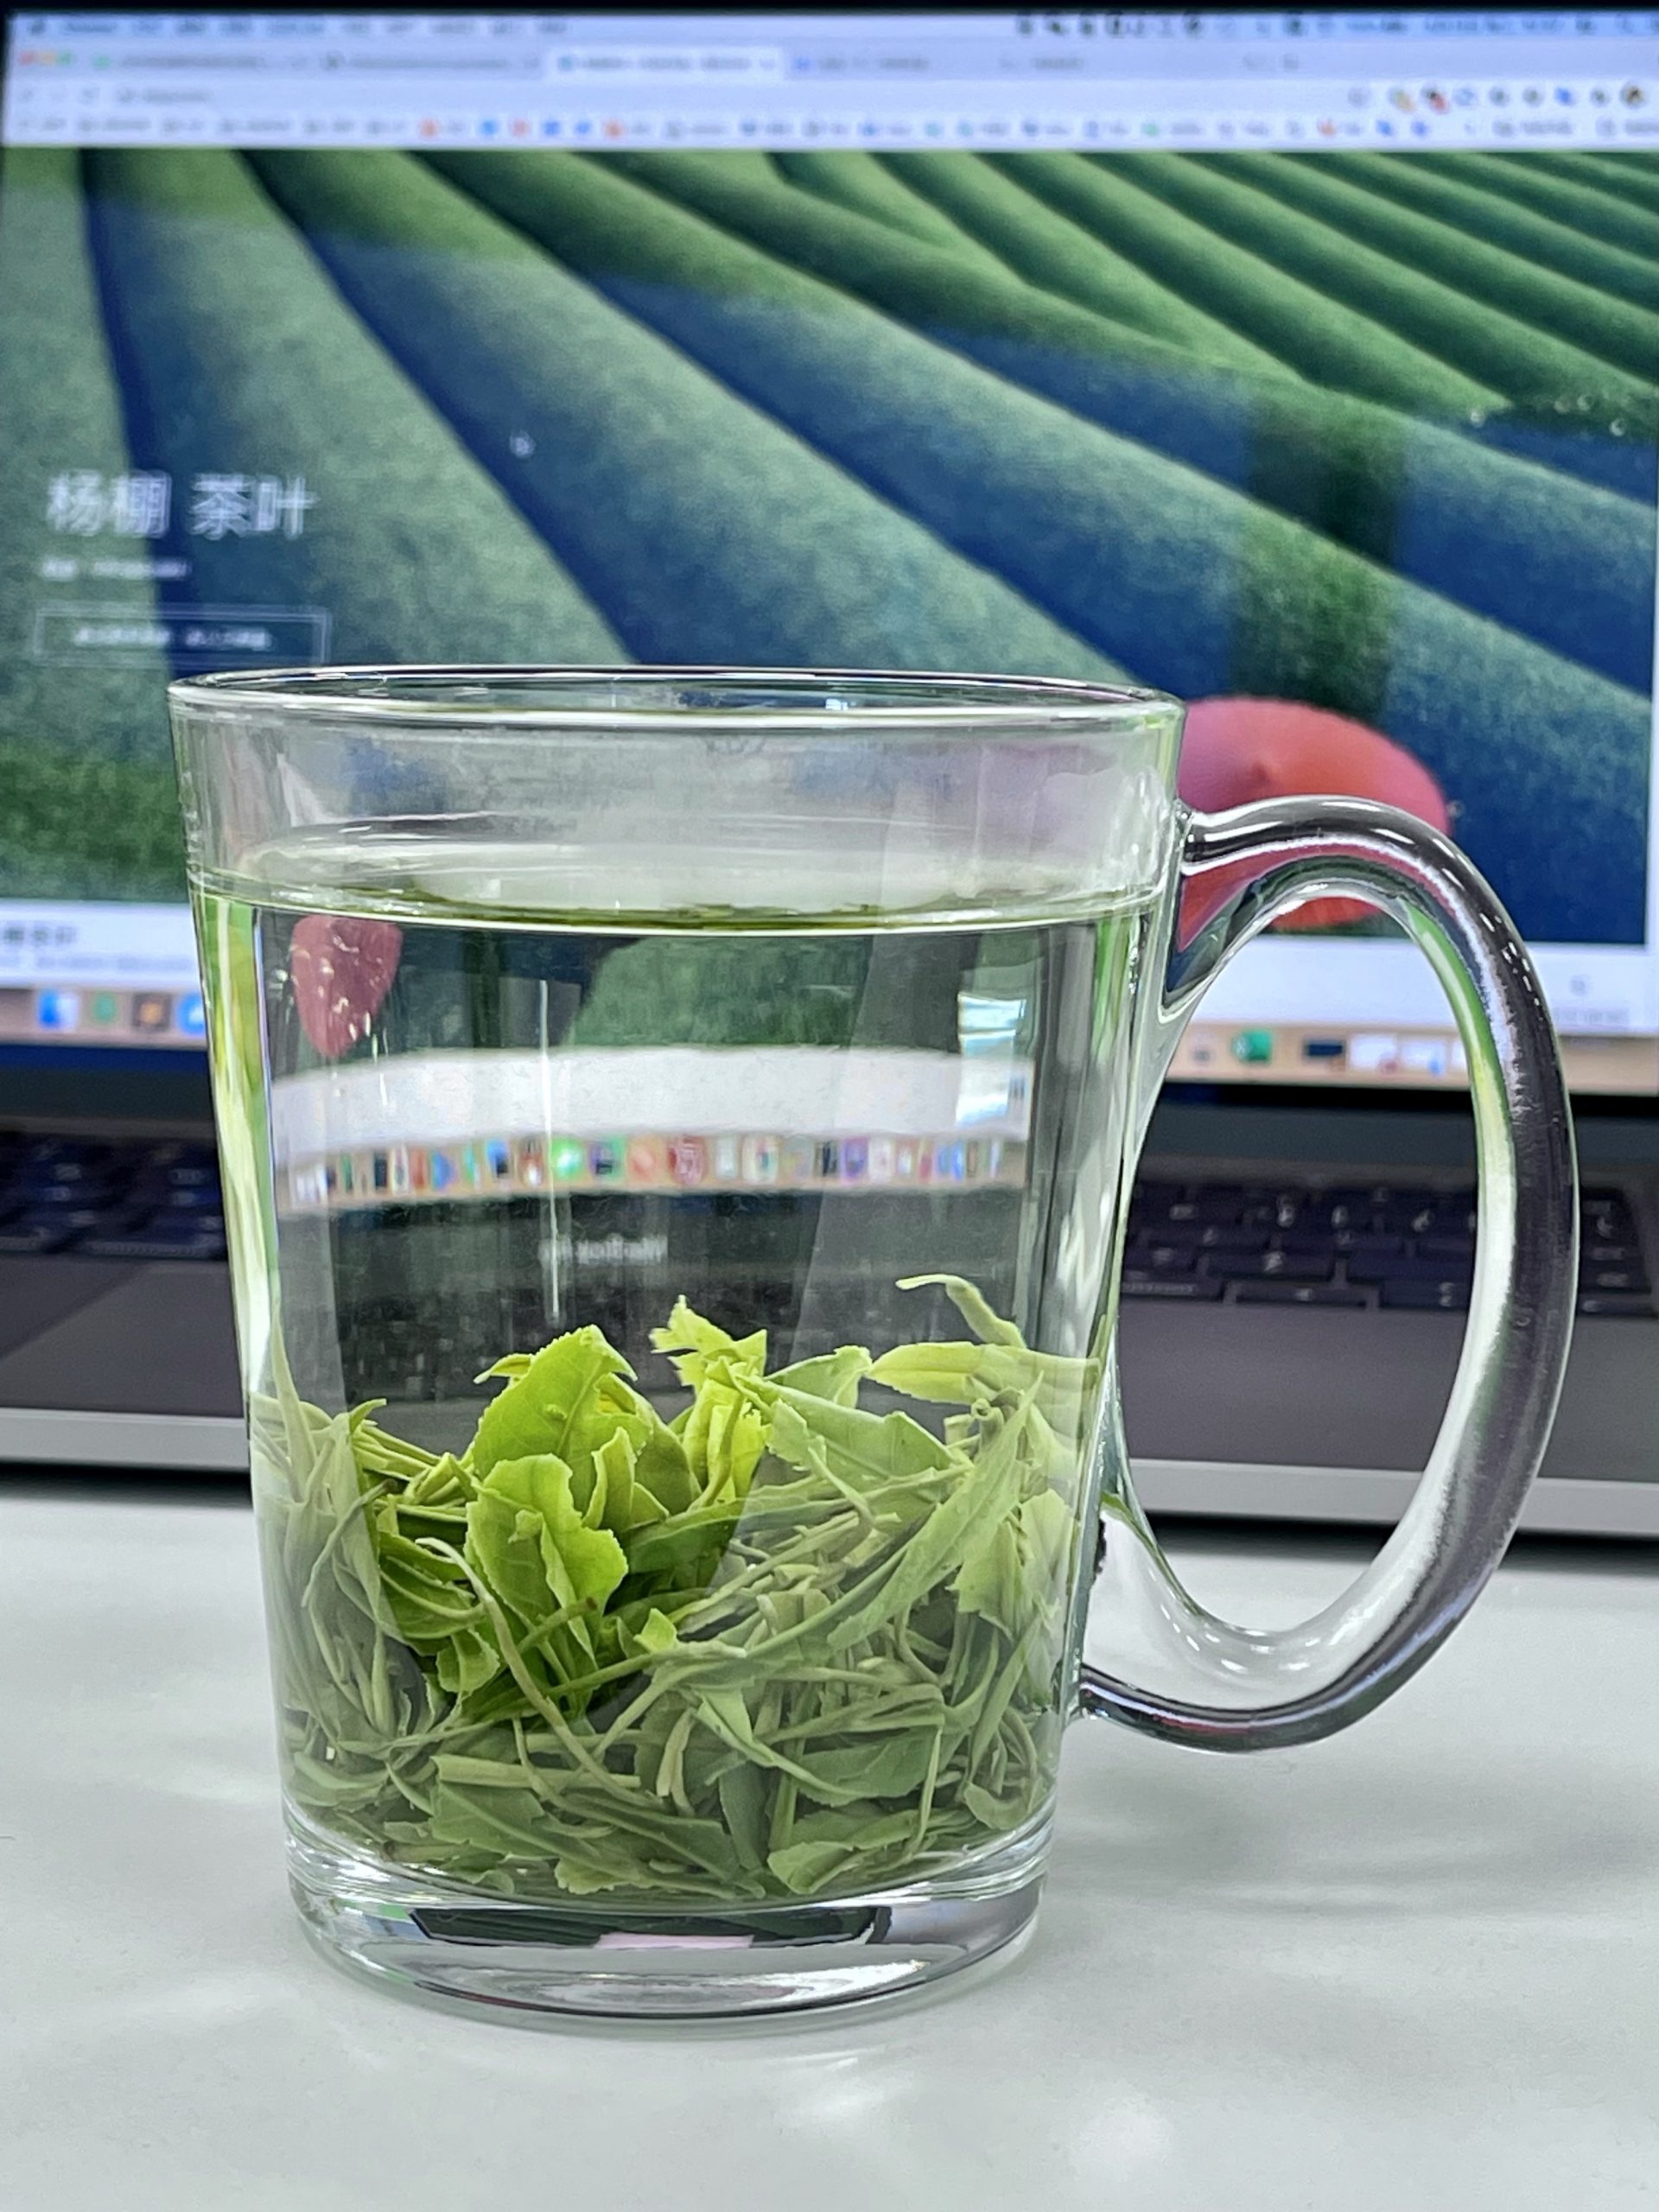 杨棚茶叶 – 欢迎光临，请自行前往农户家购买正宗茶叶。